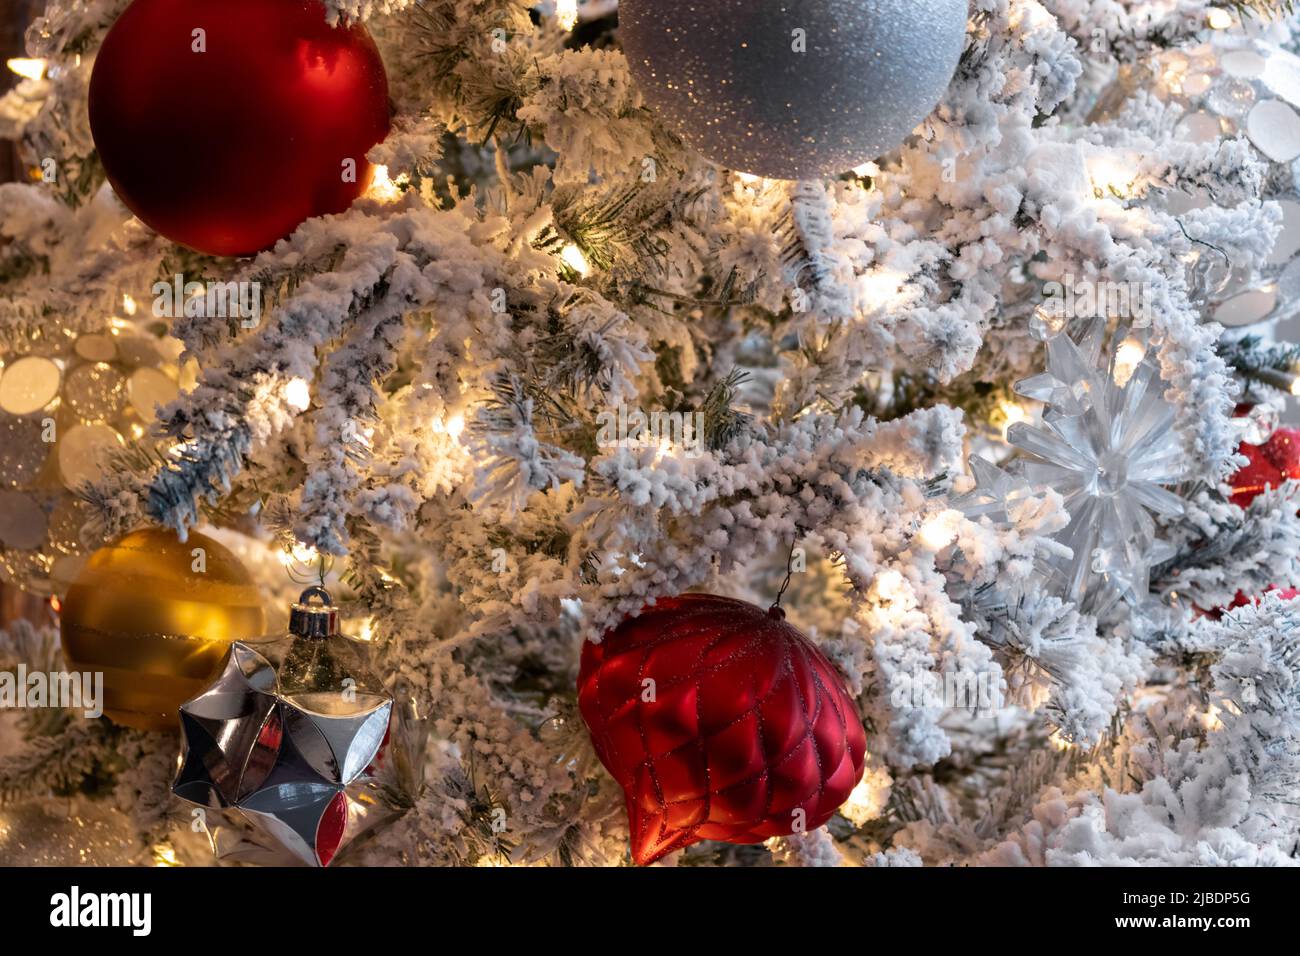 iluminación cálida, cerca de escena decoración de navidad, luces blancas en el árbol cubierto de nieve con bolas de navidad rojas, blancas, plateadas y doradas, vacaciones festivas Foto de stock